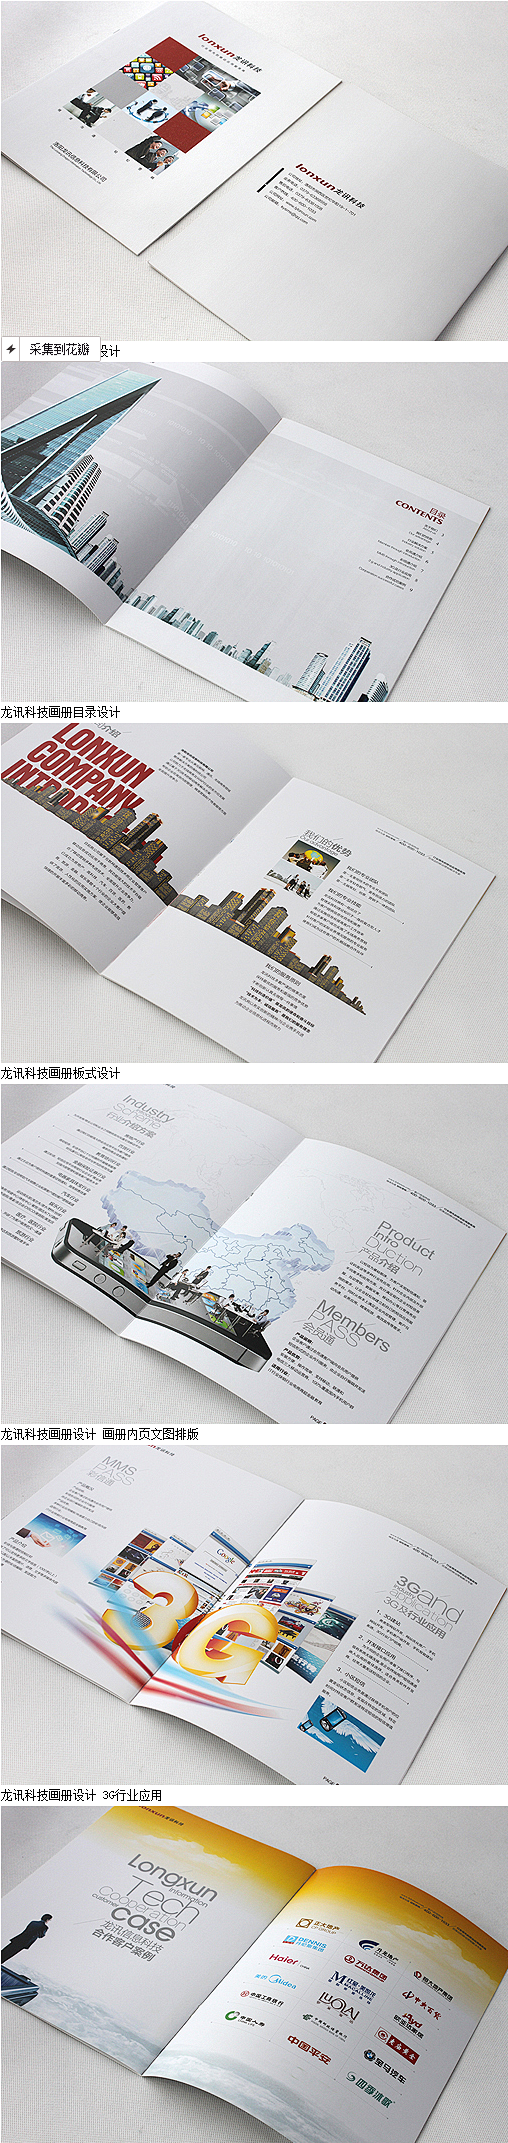 洛阳龙讯科技画册设计 洛阳高档画册设计印...